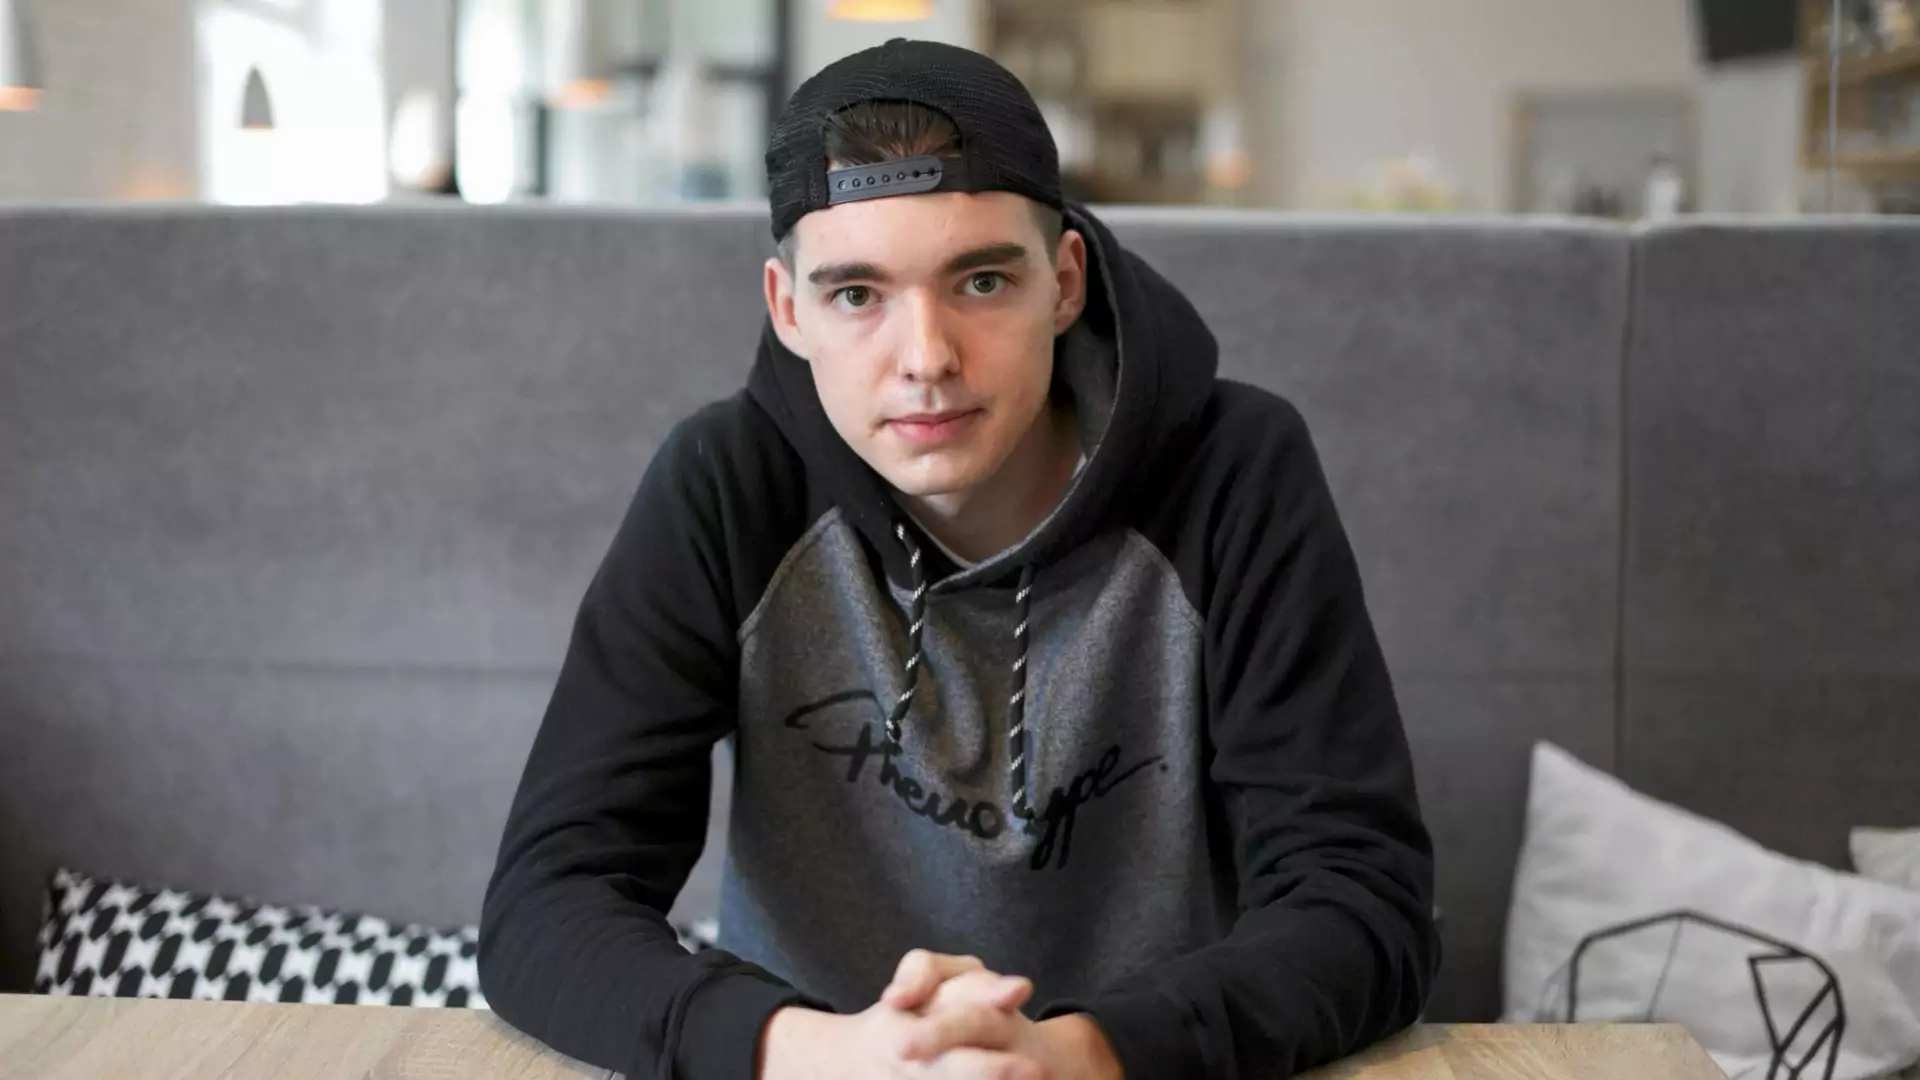 Jak odnieść sukces, będąc nastolatkiem? 18-letni polski biznesmen radzi: nie oglądaj się na innych